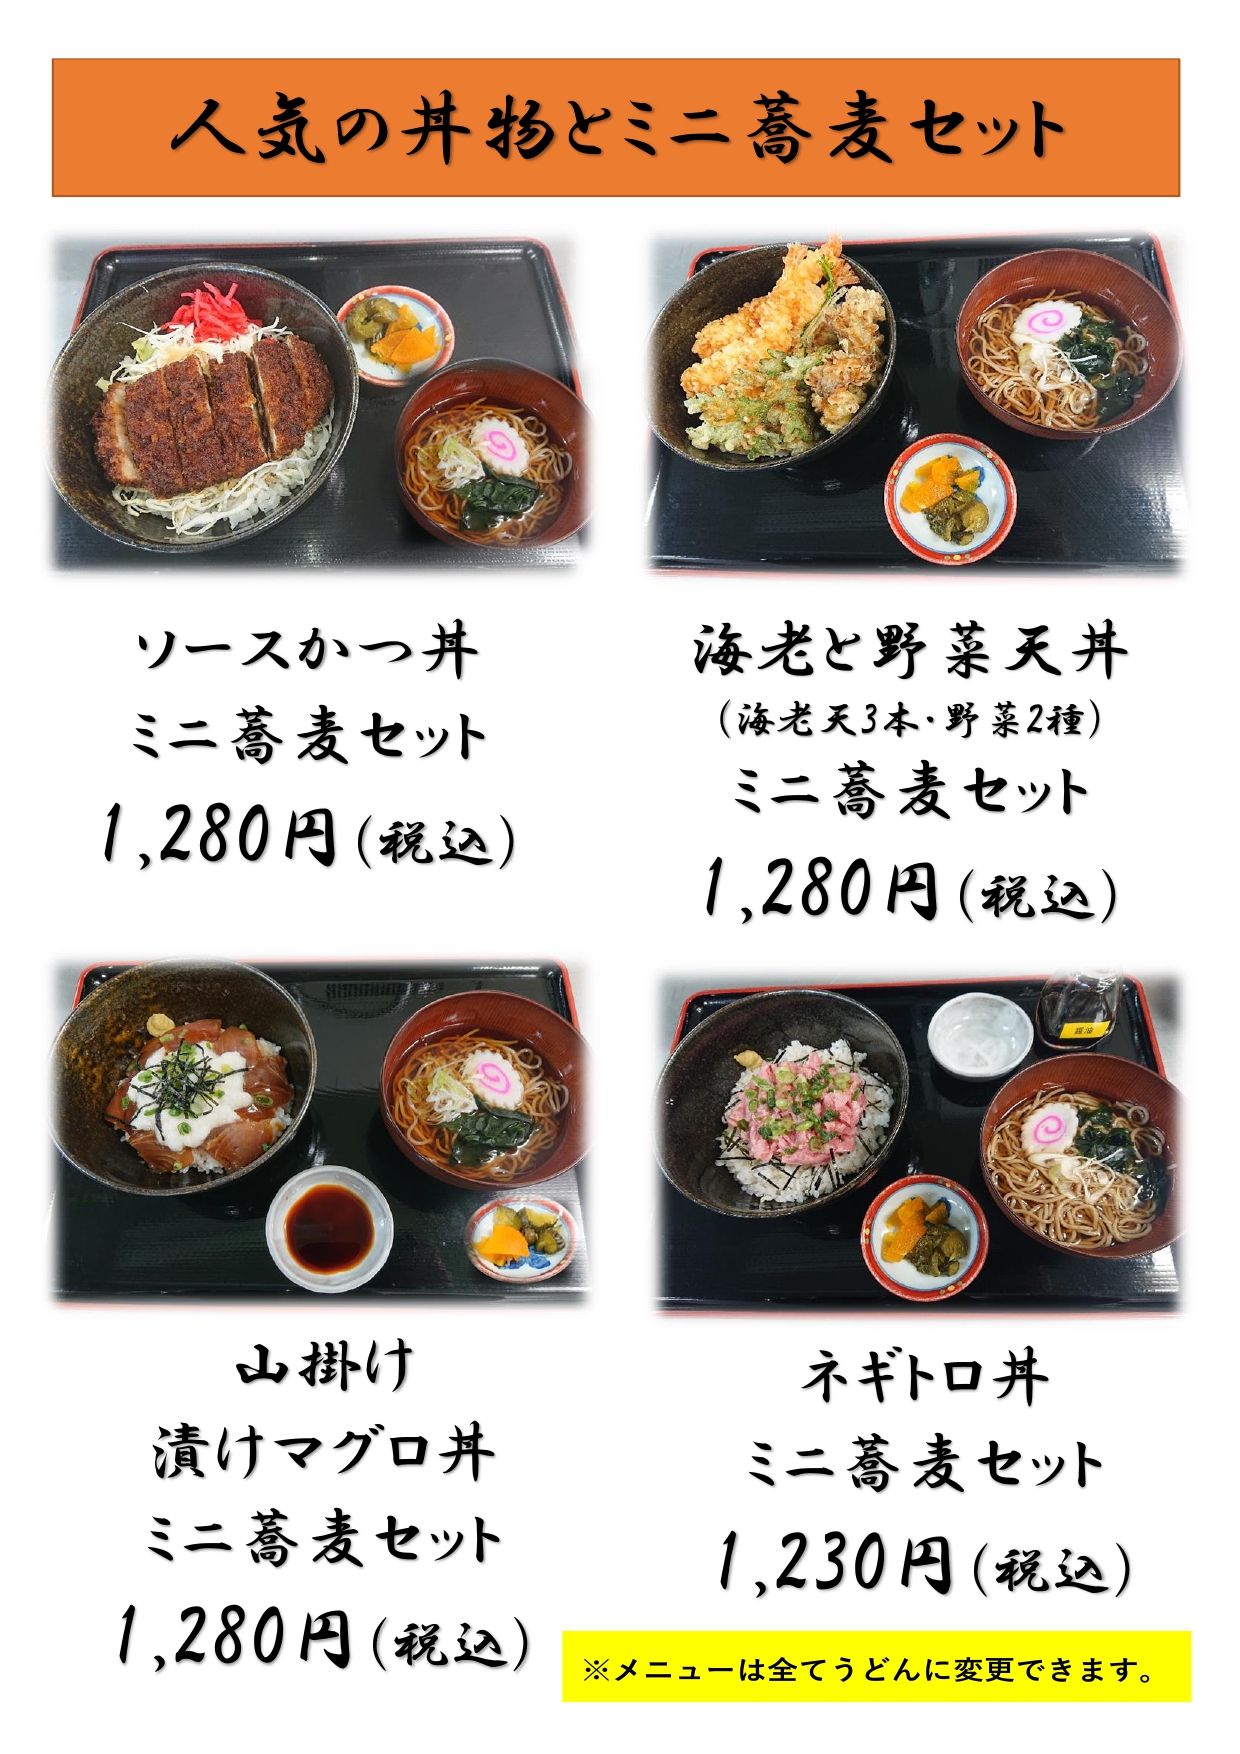 menu 12